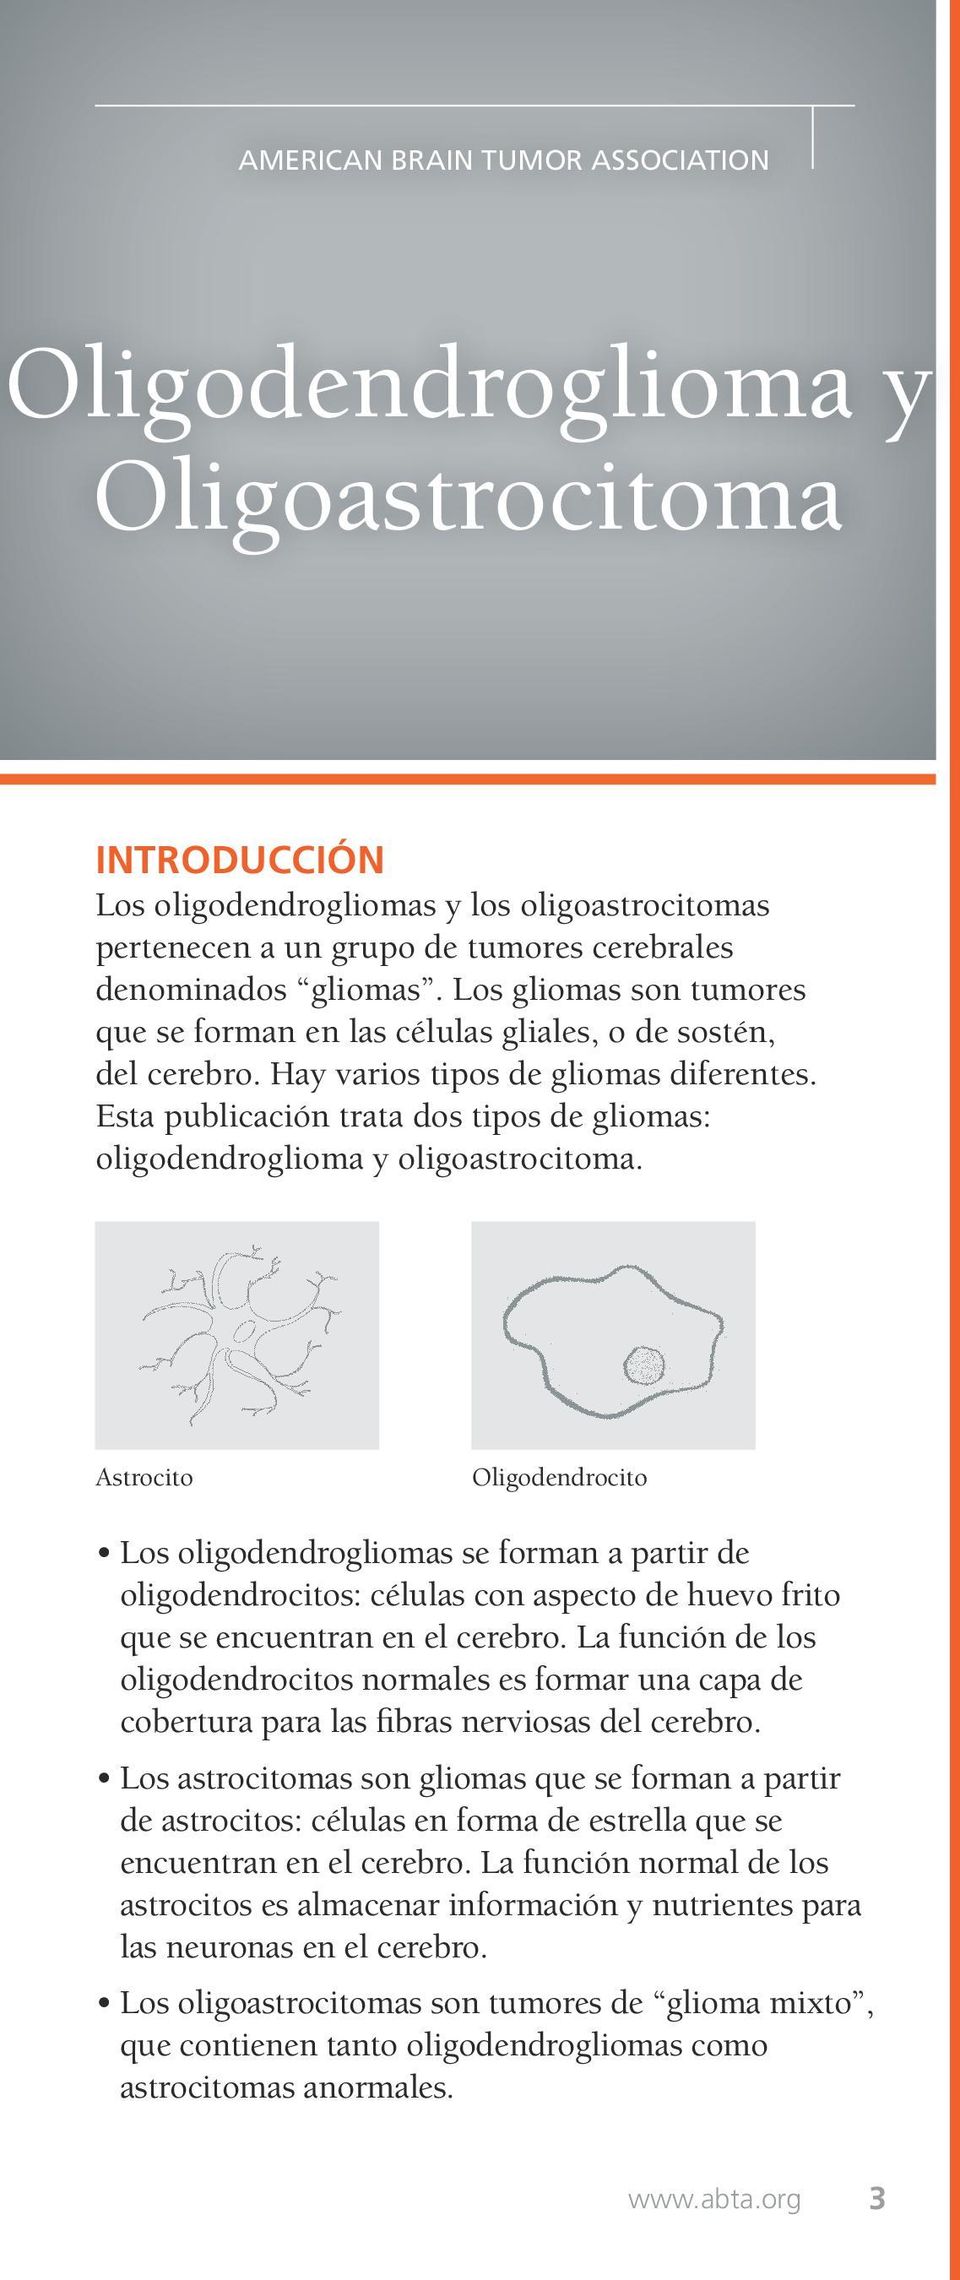 Esta publicación trata dos tipos de gliomas: oligodendroglioma y oligoastrocitoma.